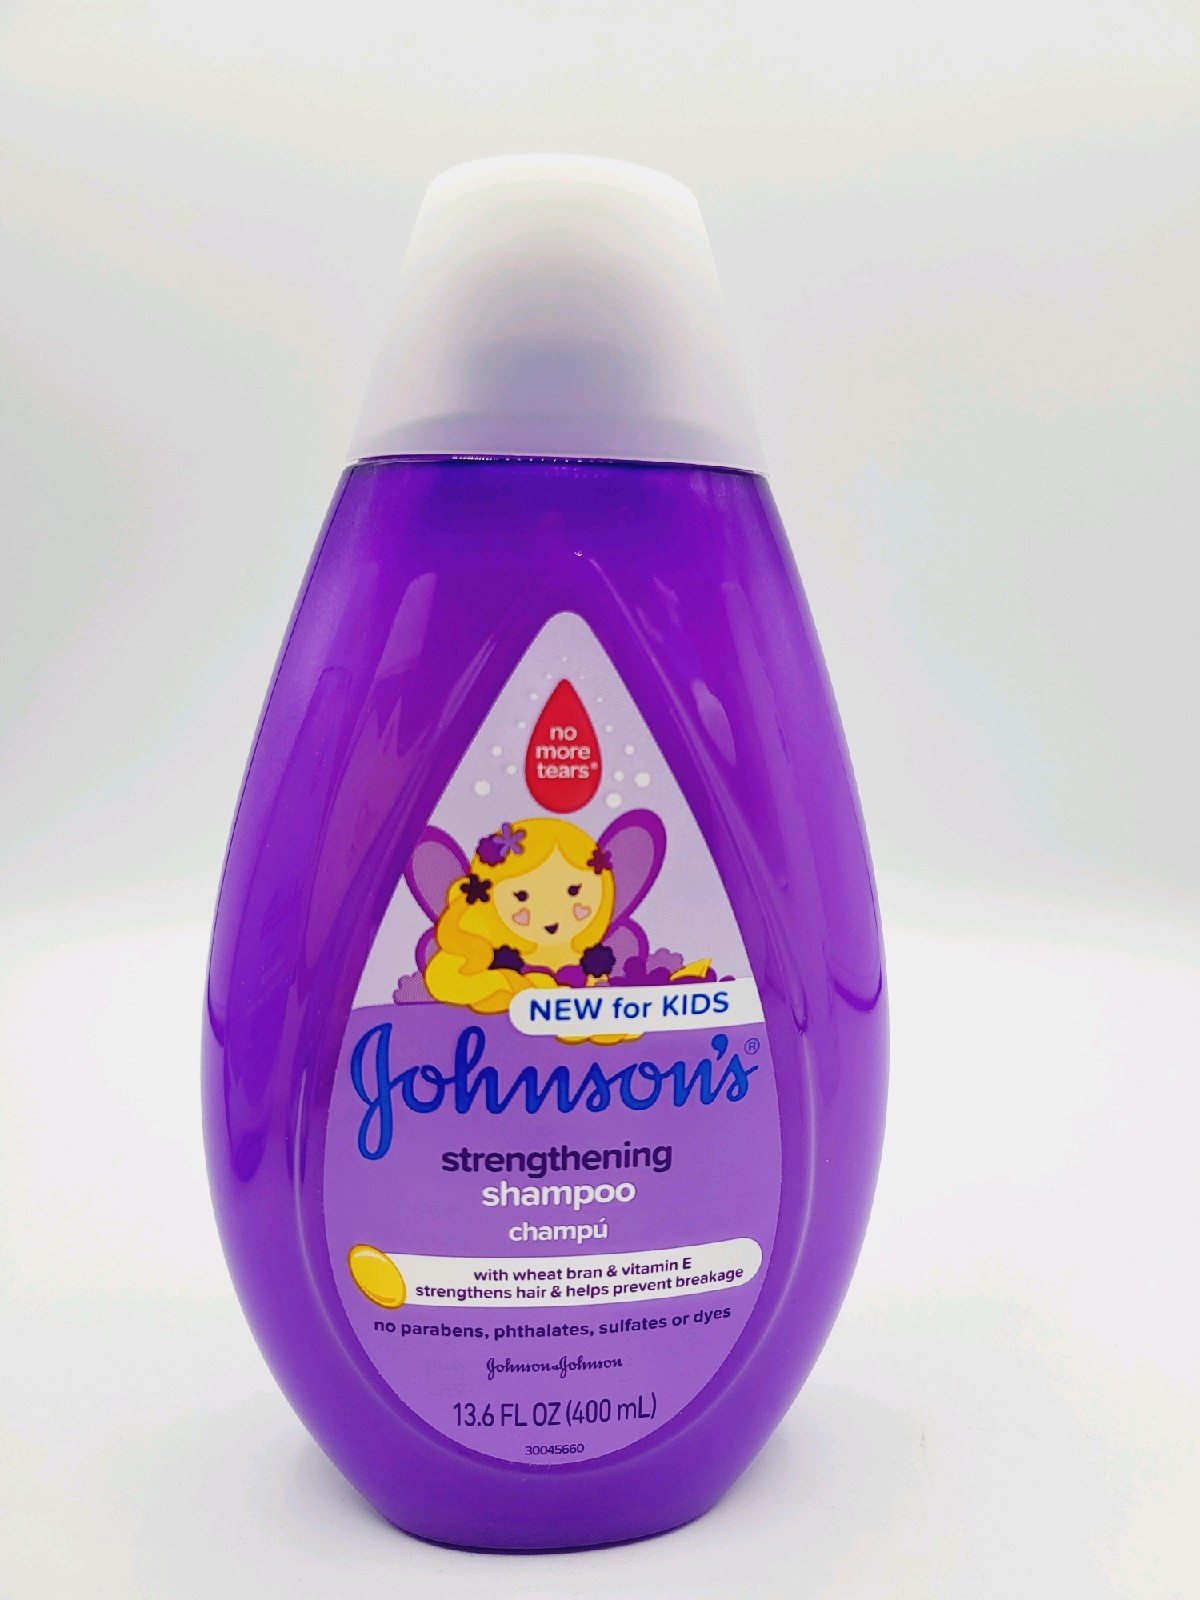 J&J Shampoo